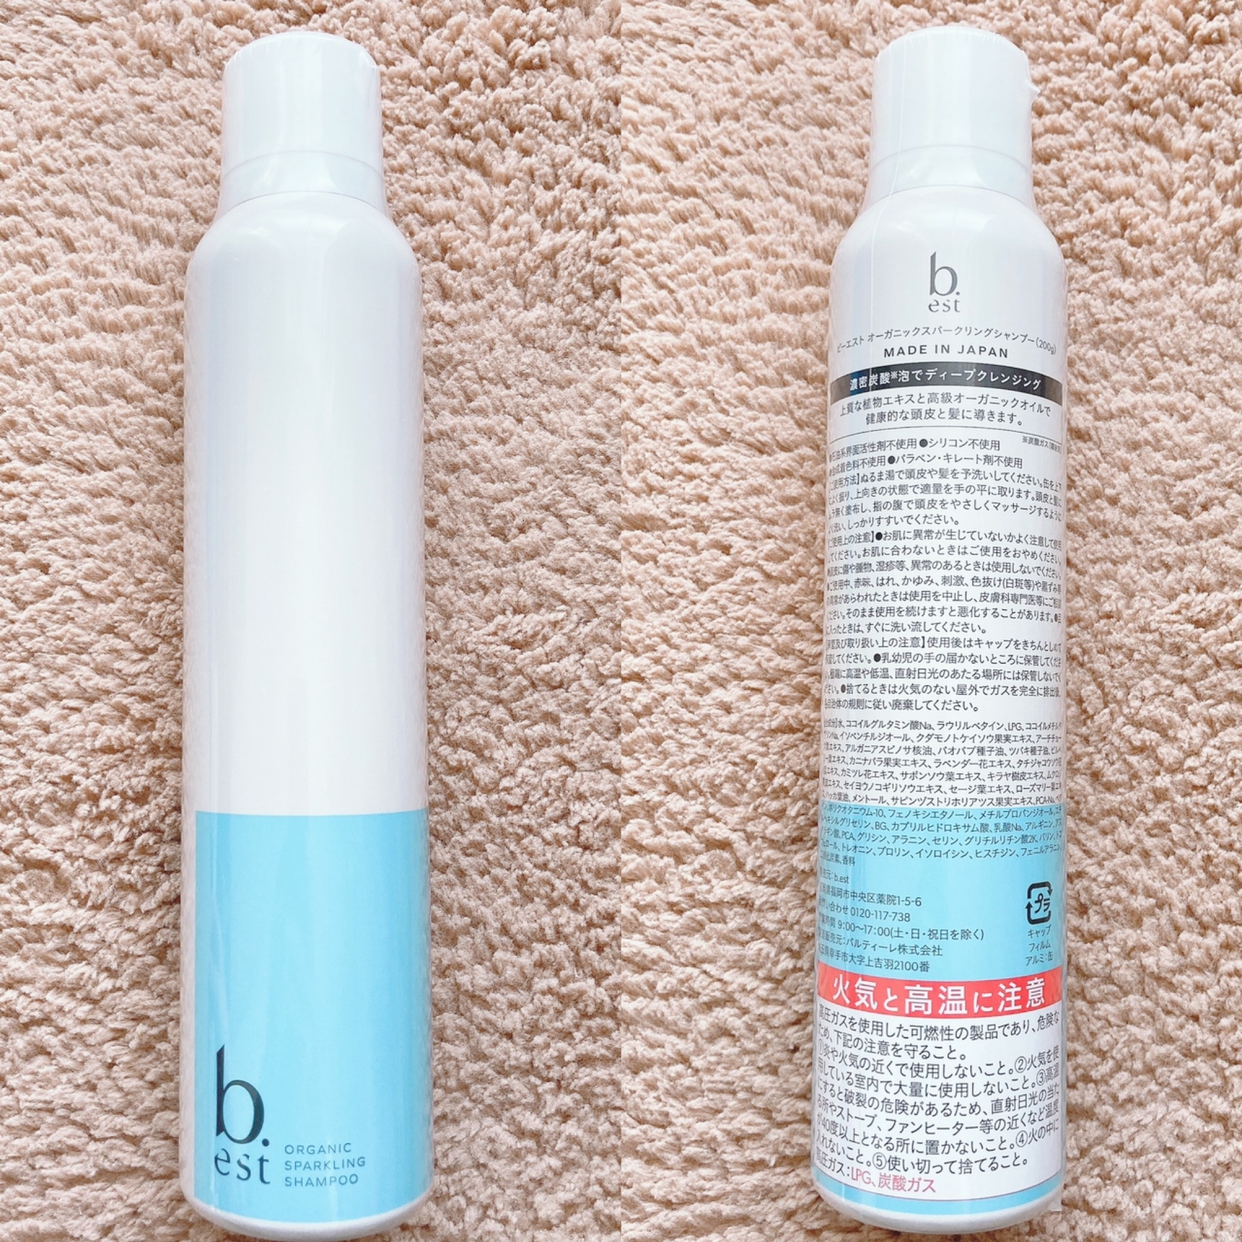 b.est(ビーエスト) organic sparkling shampooの良い点・メリットに関するyunaさんの口コミ画像2